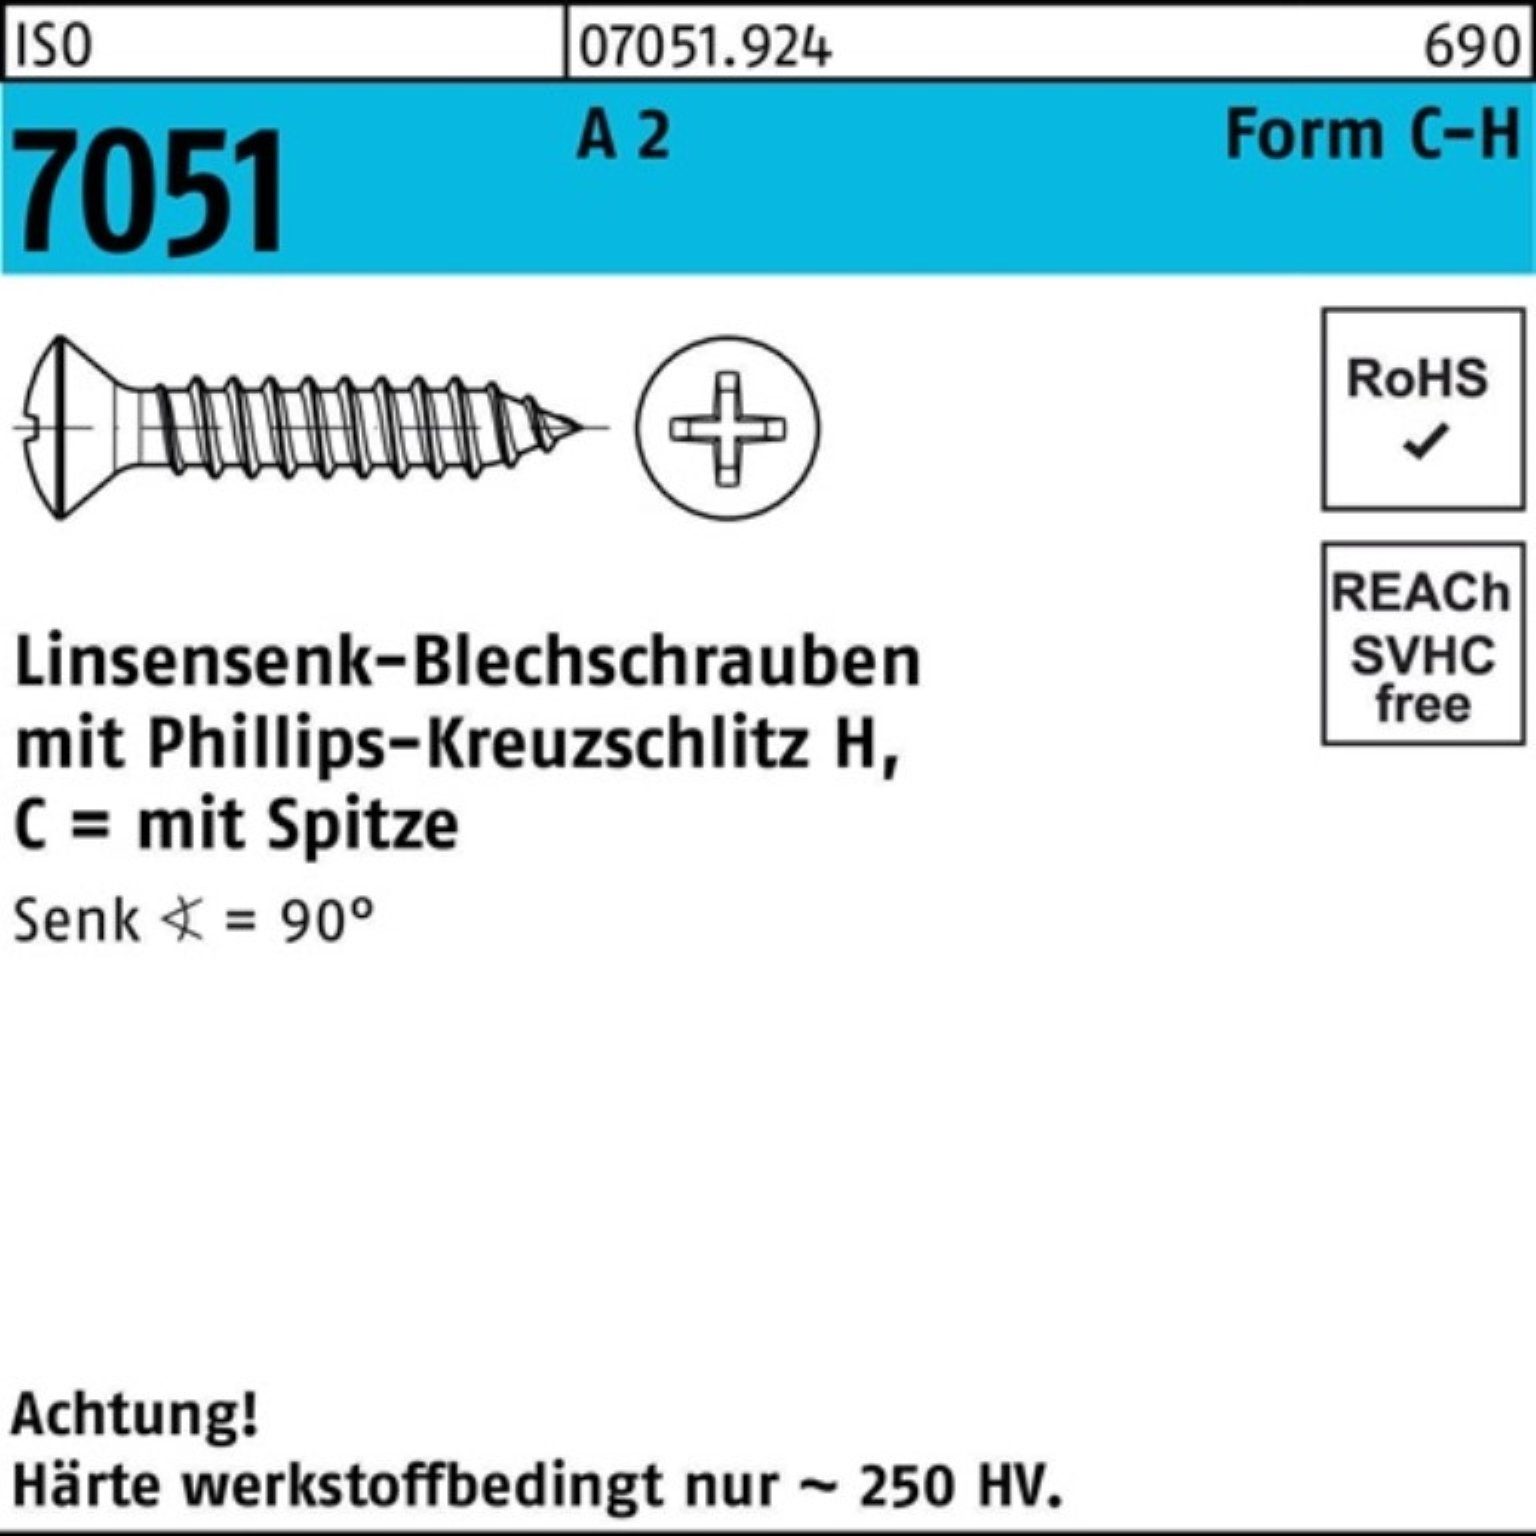 25 Pack -C-H Blechschraube Spitze/PH 2 Reyher 4,2x LISEKO 7051 Blechschraube A 500er ISO 50